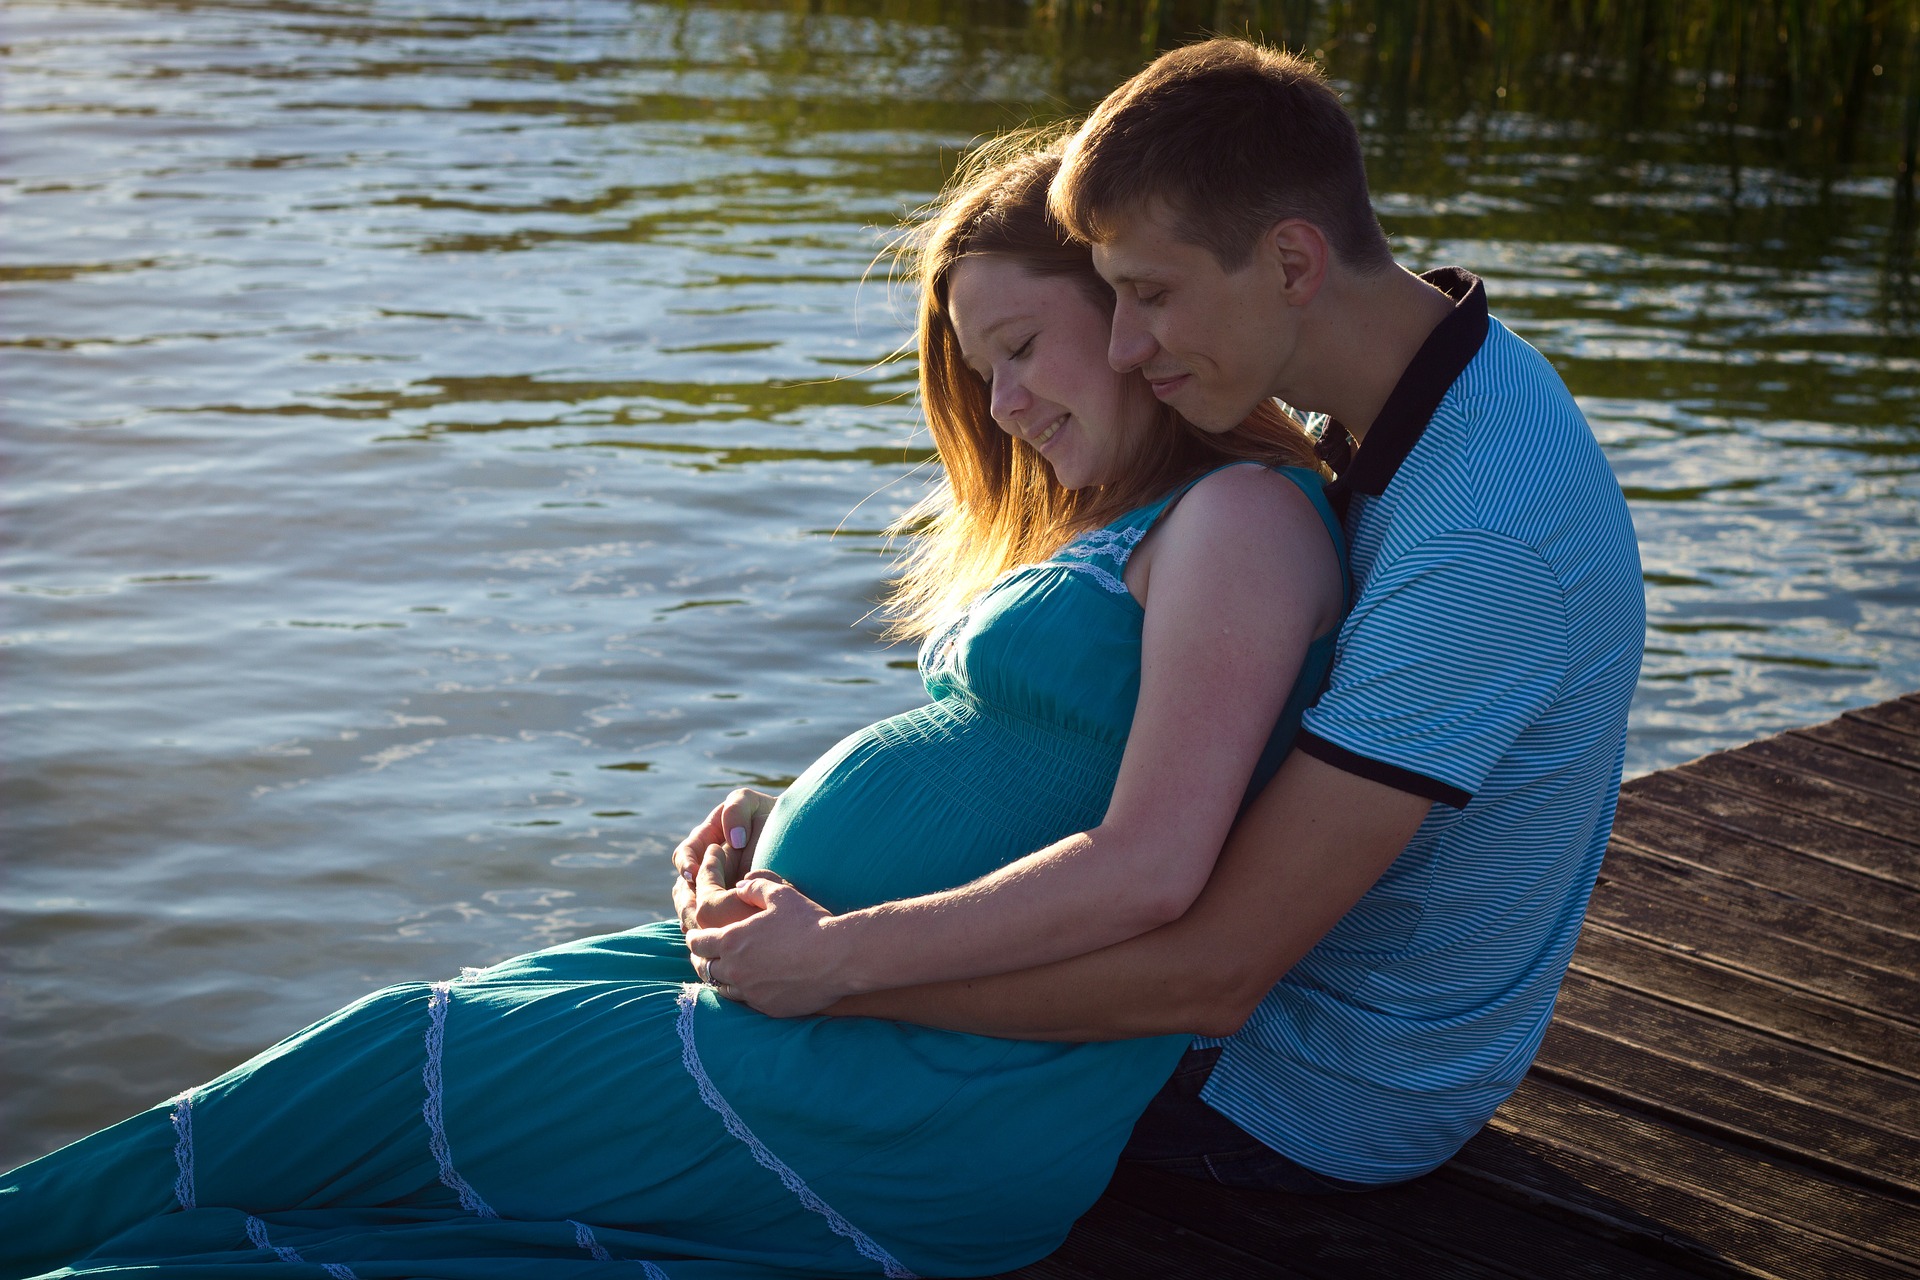 20 tydzień ciąży, planowanie ciąży, ciąża i poród,przyszli rodzice,dziecko w łonie matki,2 trymestr,licencja CC-BY-SA-4